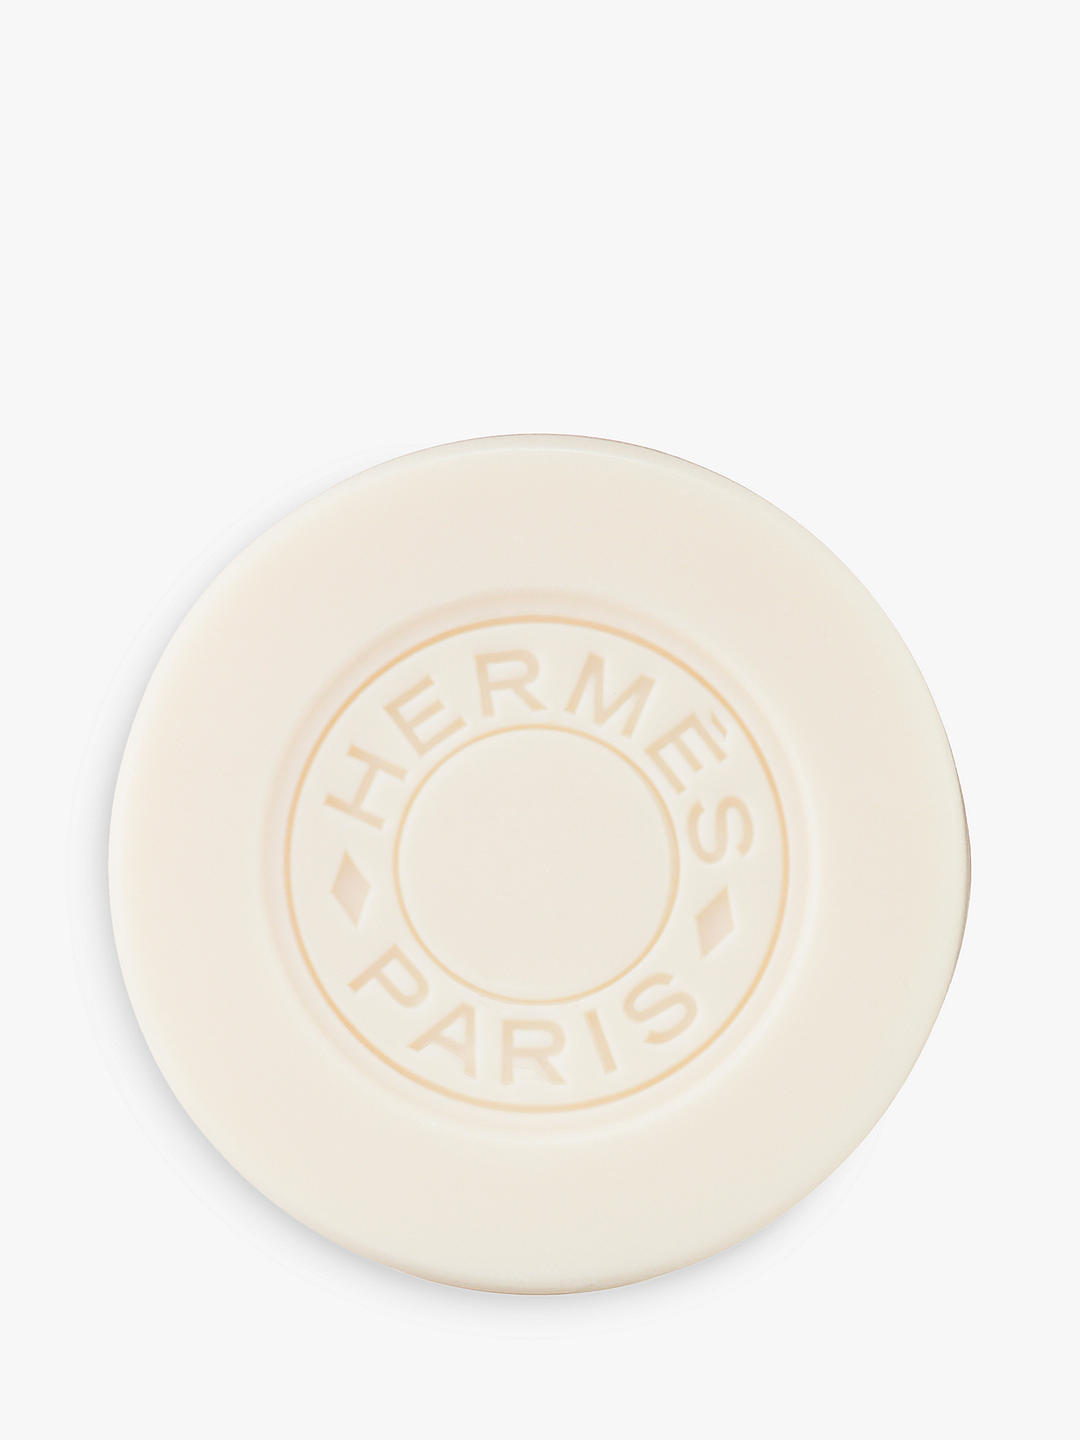 Hermès Twilly d'Hermès Perfumed Soap, 100g 1